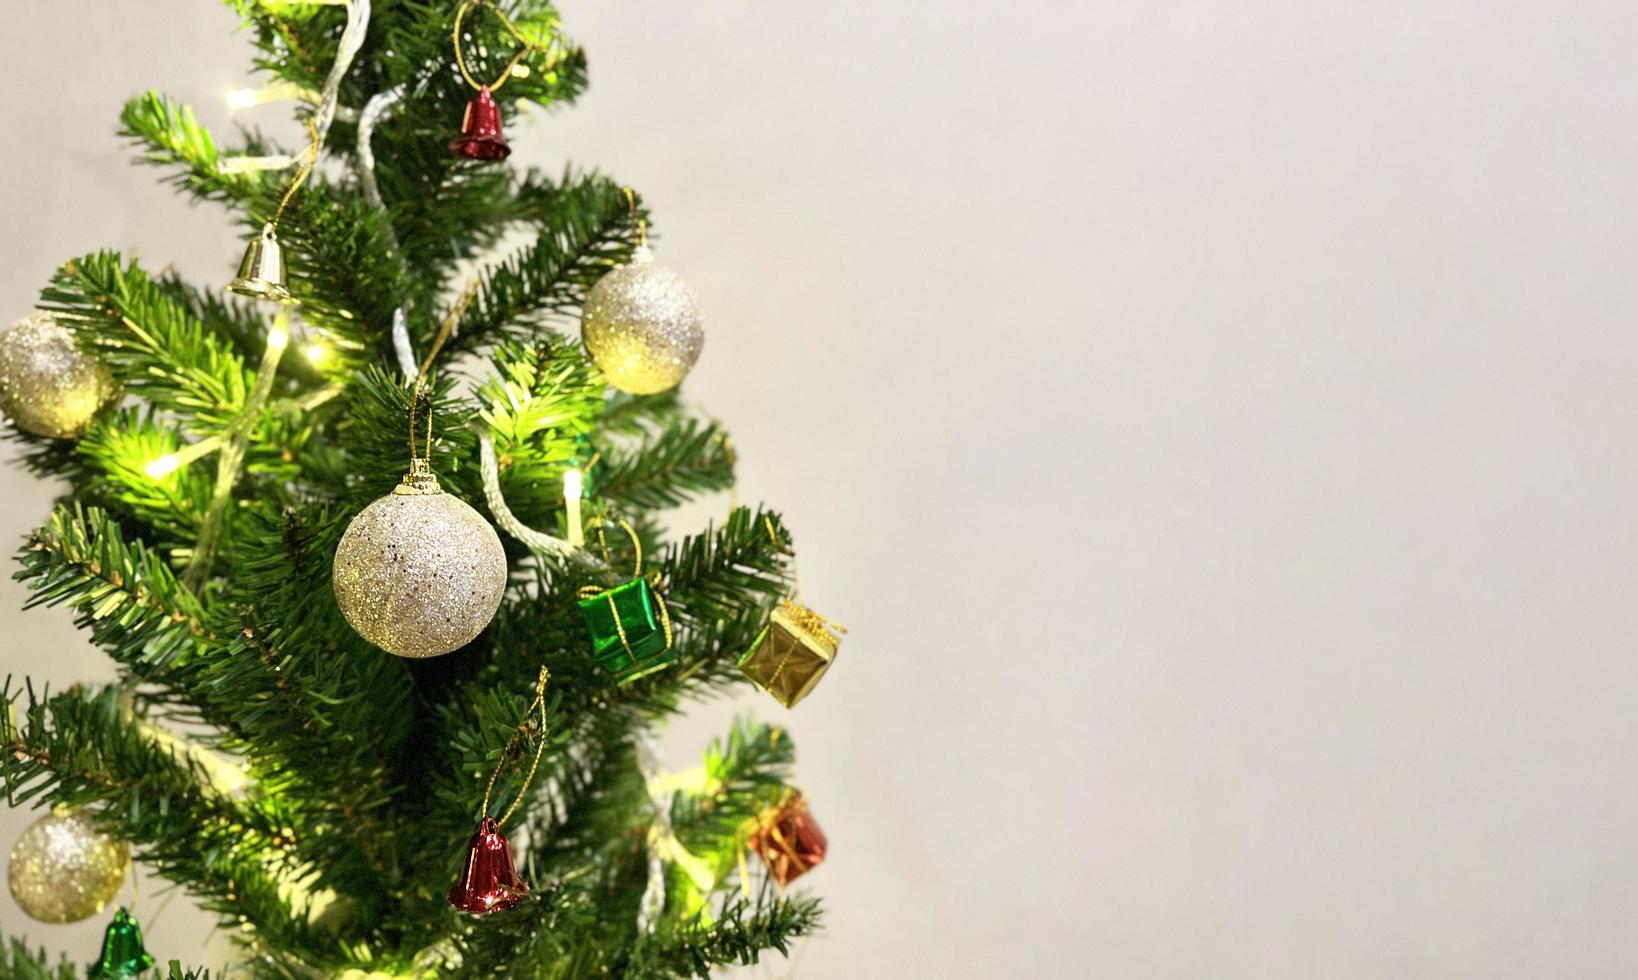 dekorerad jul träd med färgrik gåva låda och klocka isolerat på vit bakgrund foto